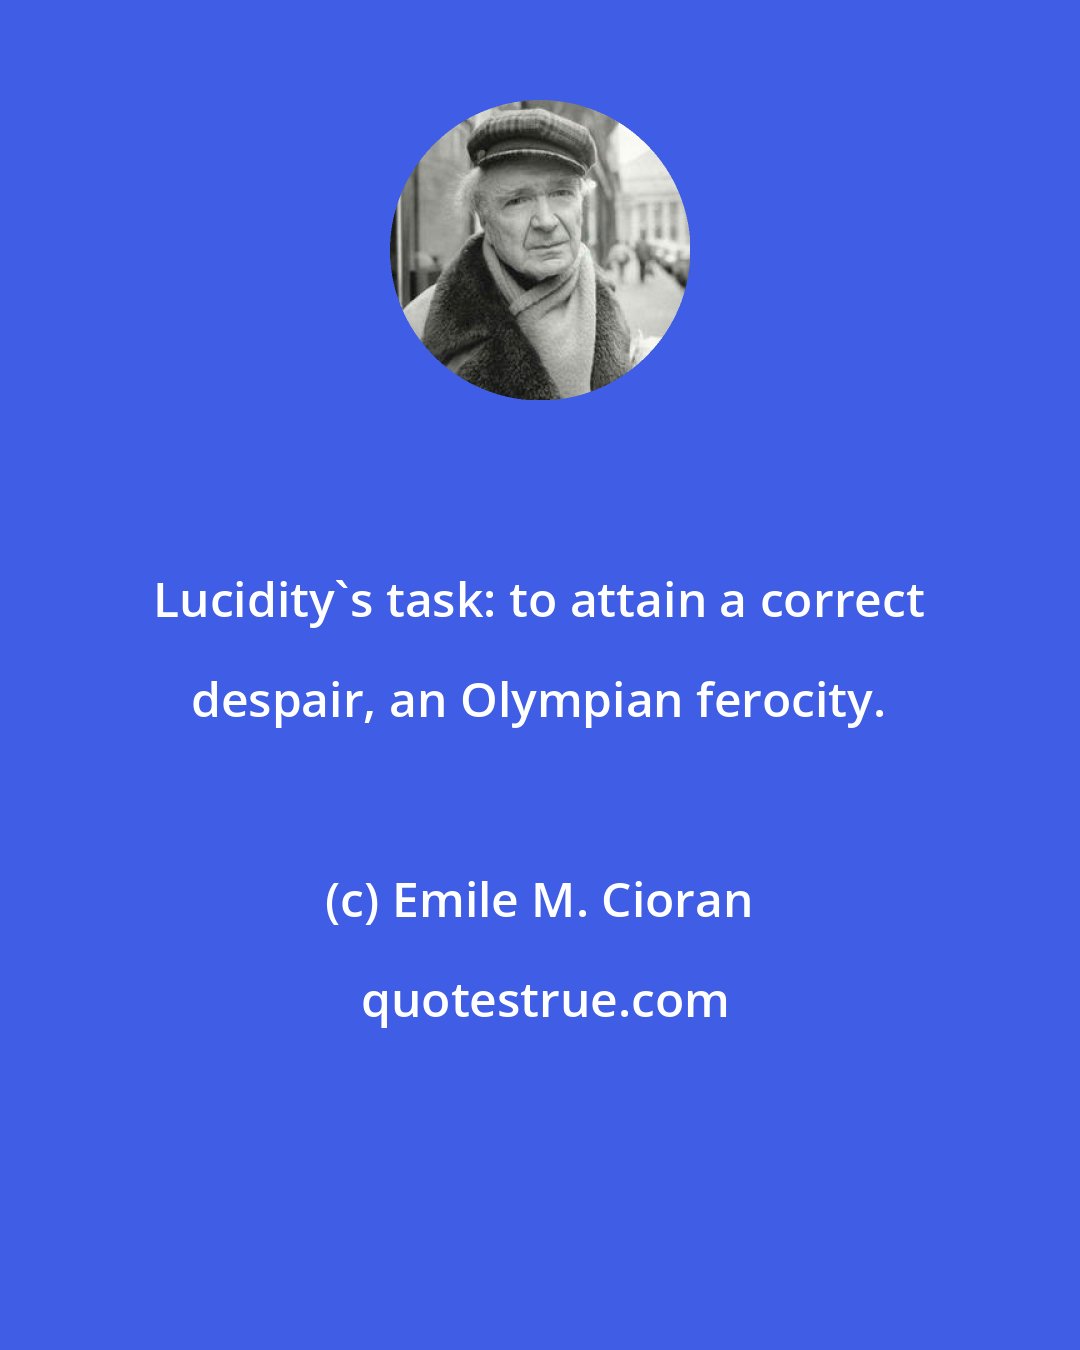 Emile M. Cioran: Lucidity's task: to attain a correct despair, an Olympian ferocity.